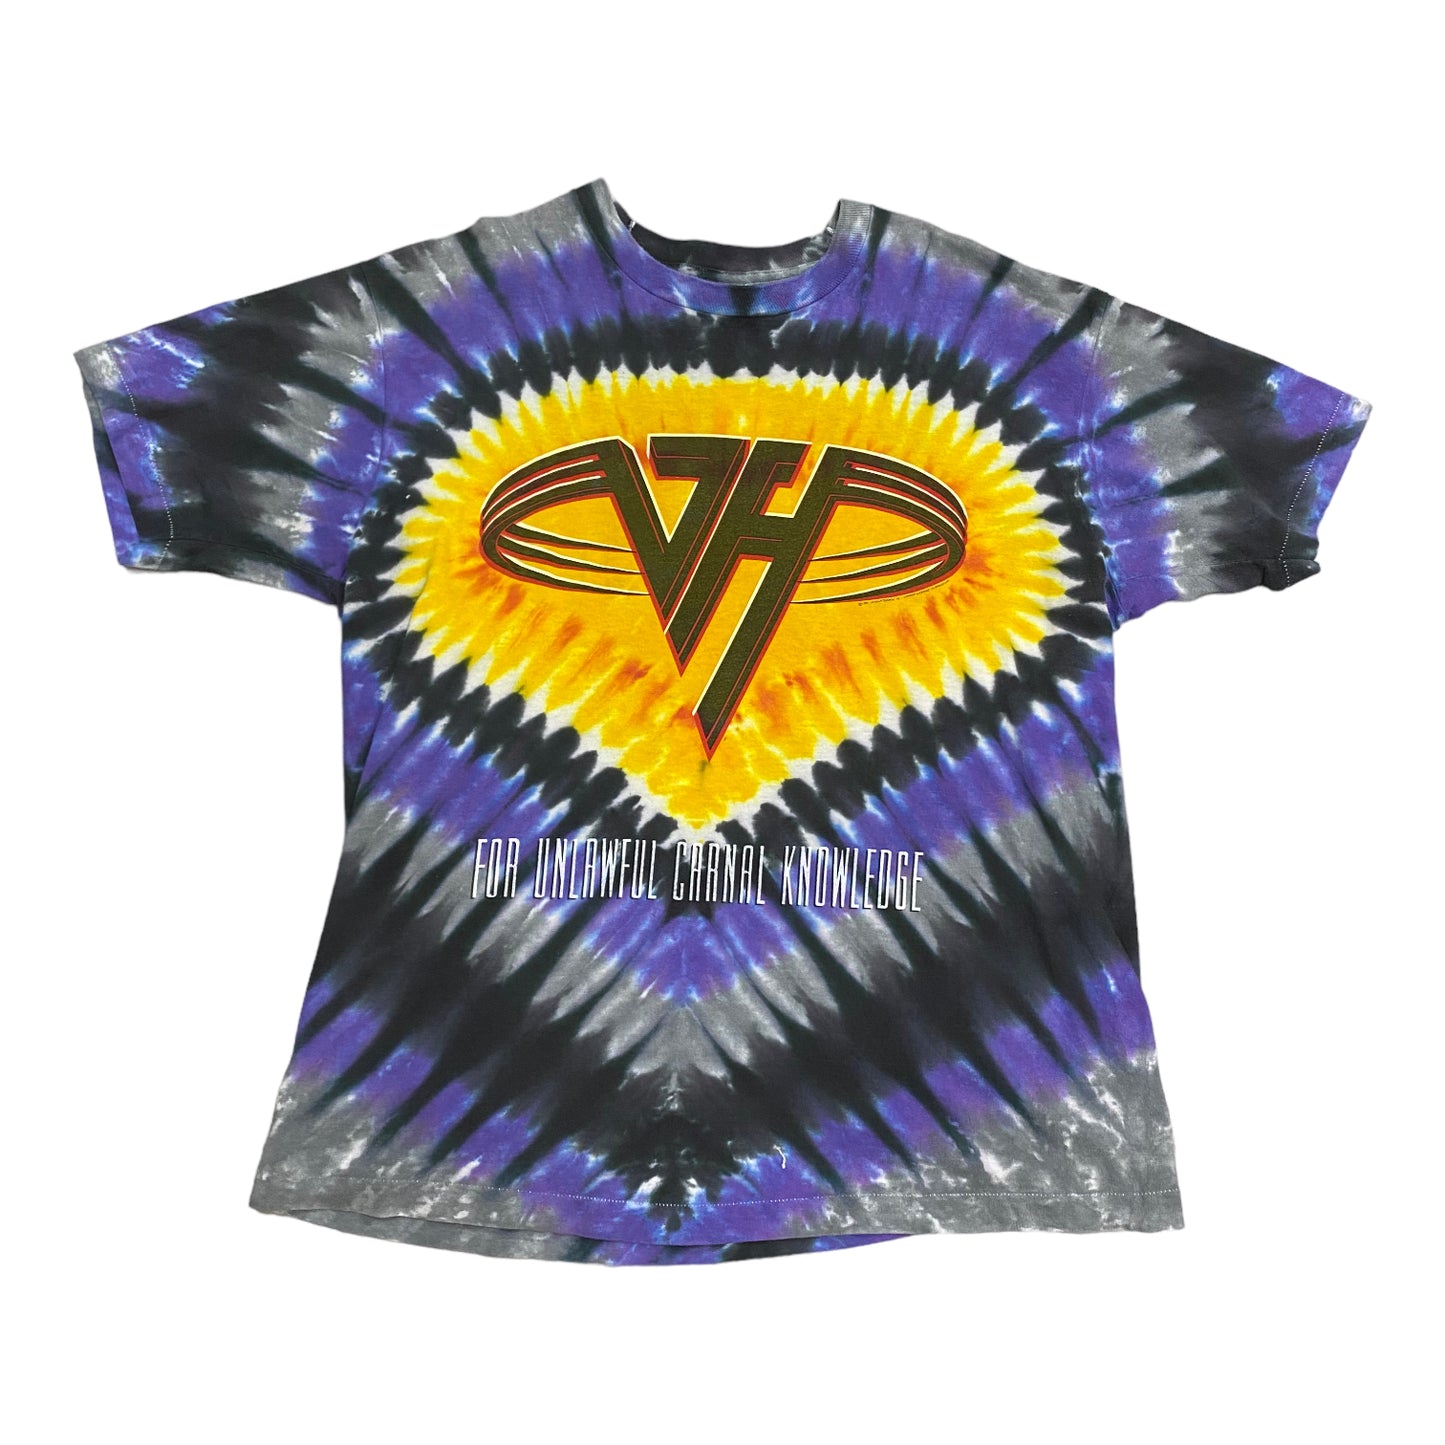 1991 Van Halen Carnal Knowledge Tie Dye Vintage Band Tee